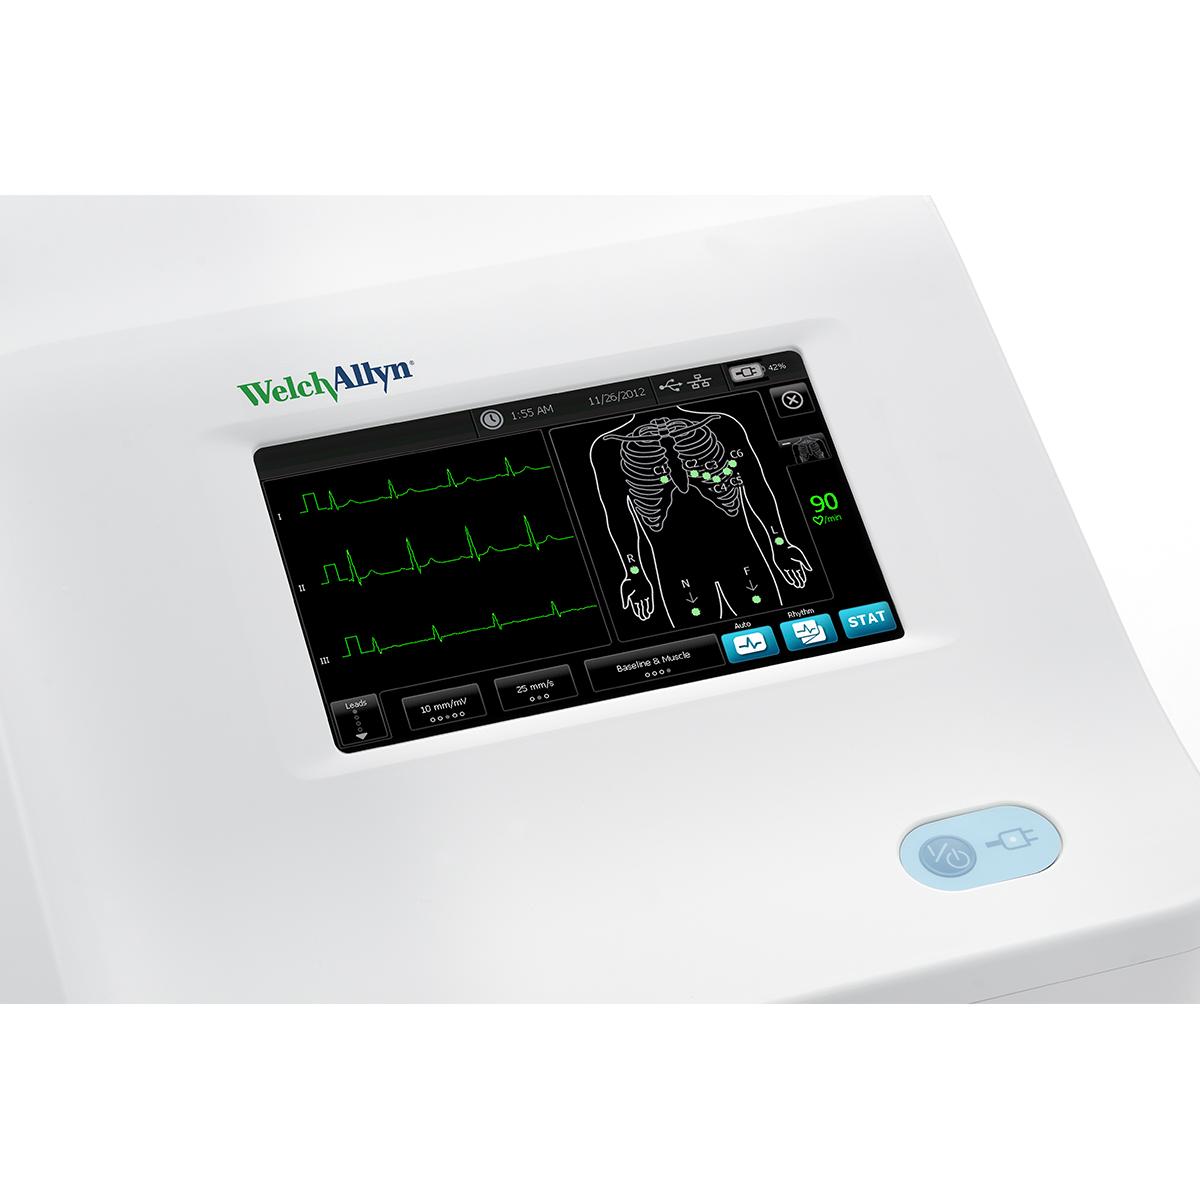 มุมมองด้านหน้าของอุปกรณ์ตรวจวัดคลื่นไฟฟ้าหัวใจ Welch Allyn CP 150 Resting ECG พร้อมสไปโรมิเตอร์สำหรับตรวจสมรรถภาพปอดและจอแสดงข้อมูล